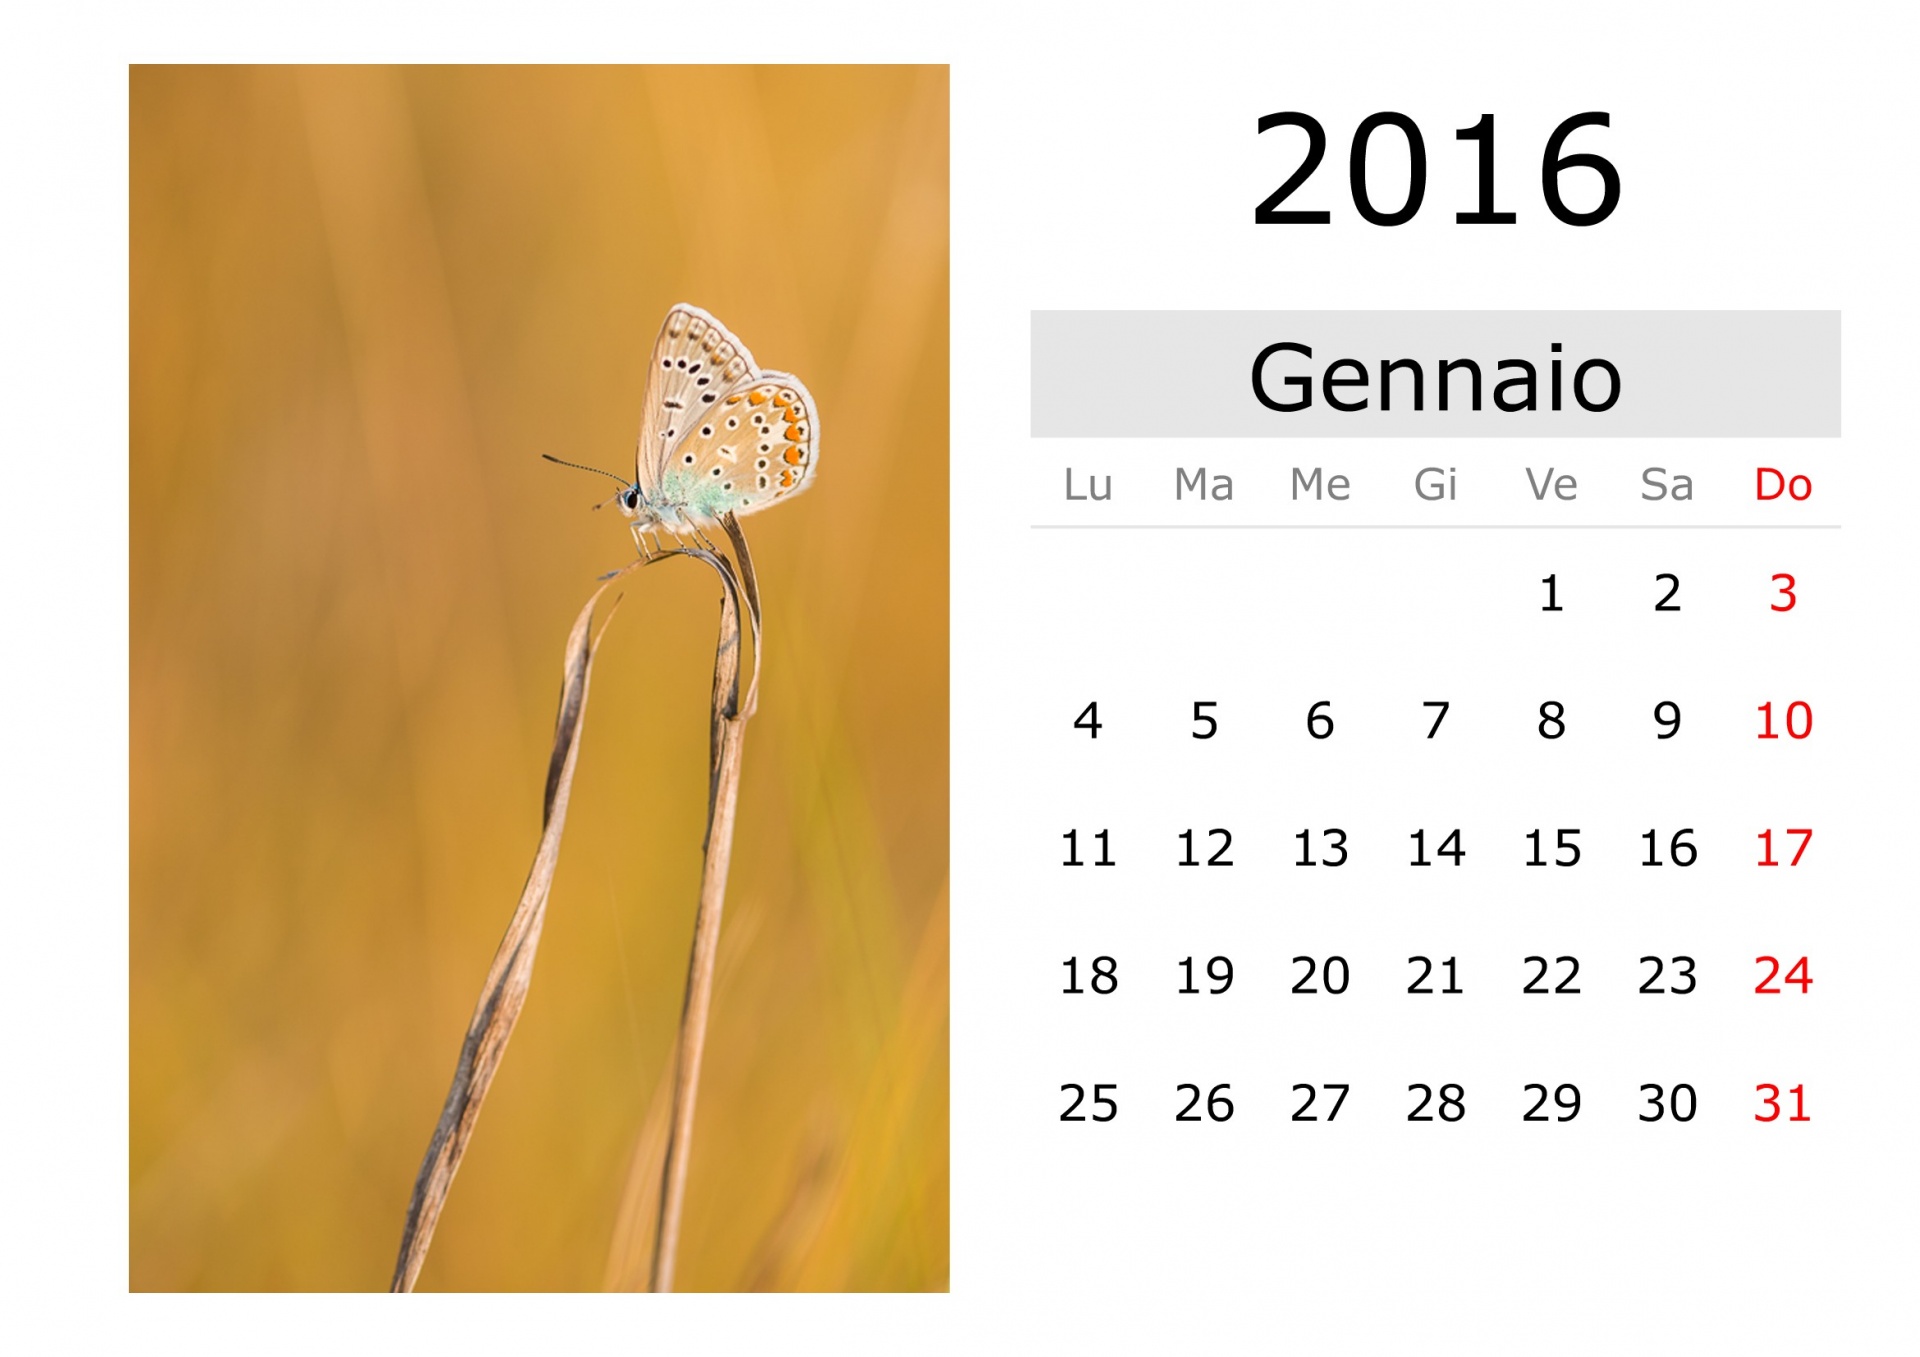 Calendar - January 2016 (Italian)